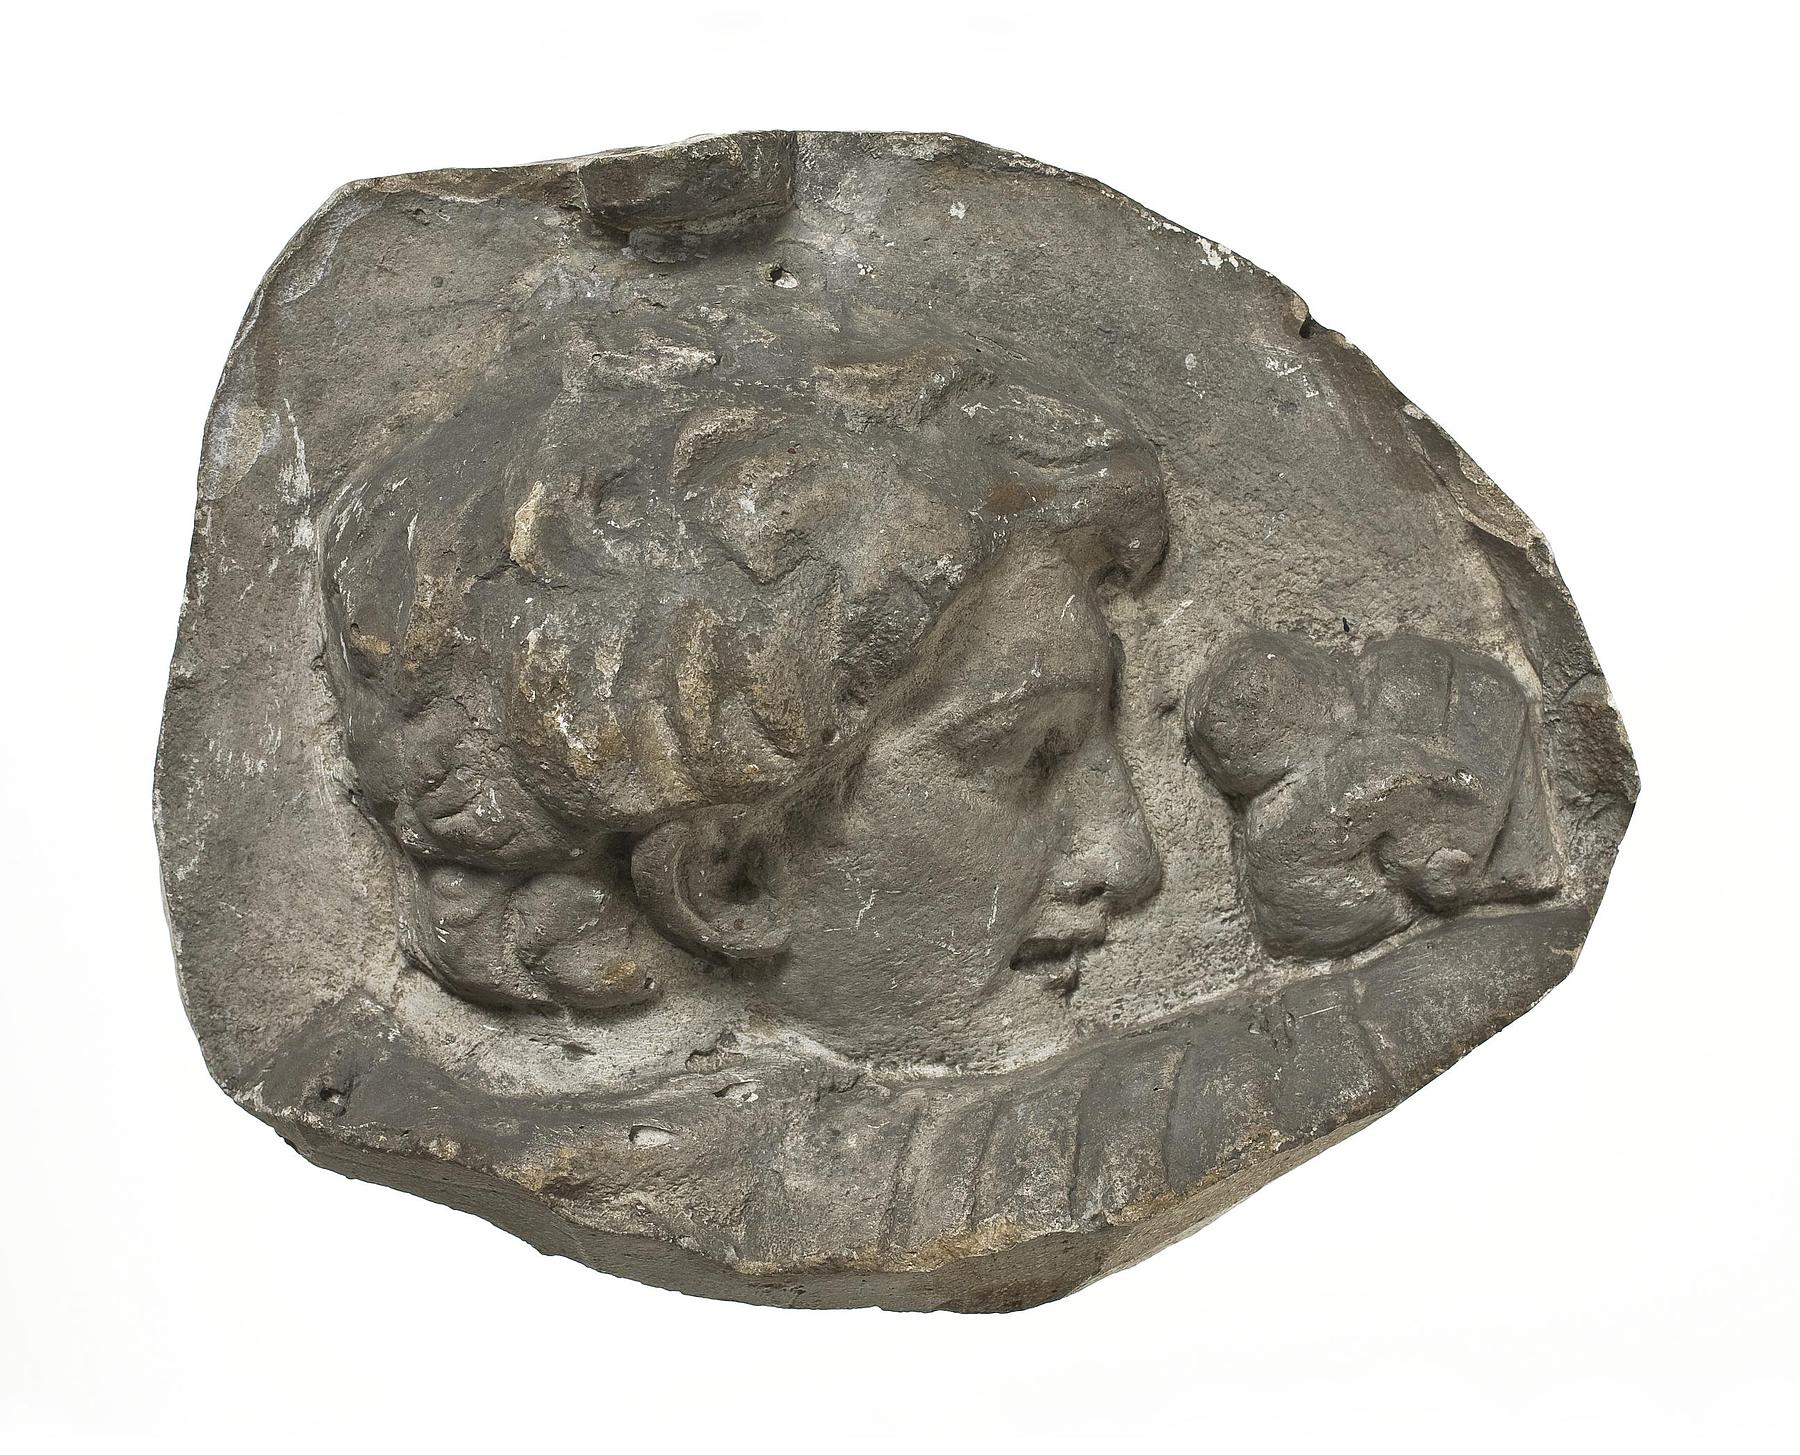 Heads of Romans, L328eee